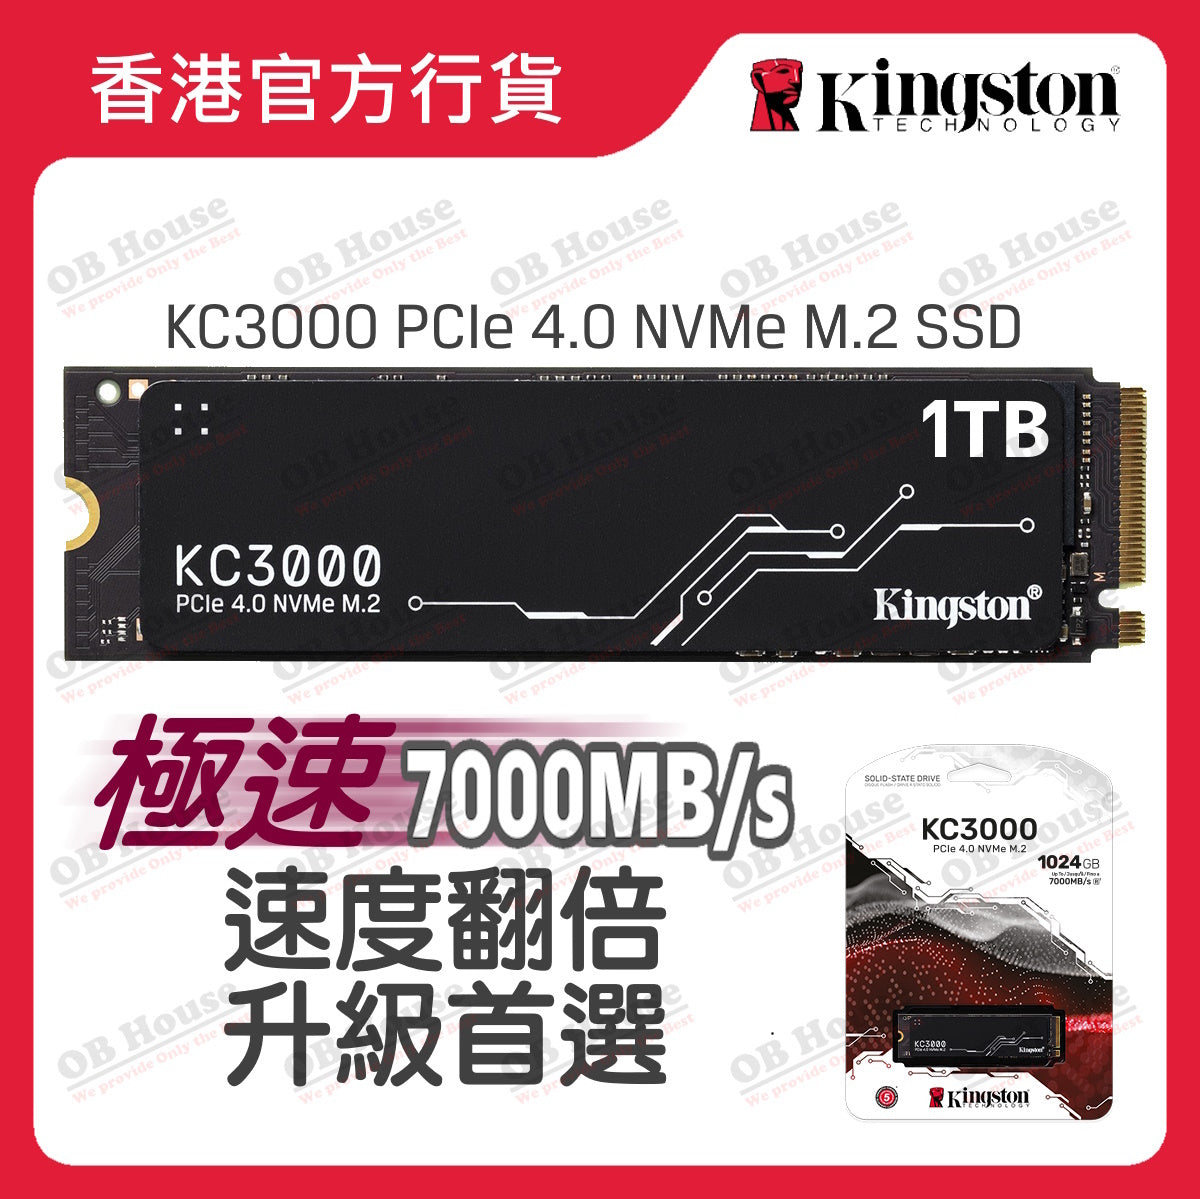 KC3000 PCIe 4.0 NVMe M.2 SSD 固態硬碟 (SKC3000)